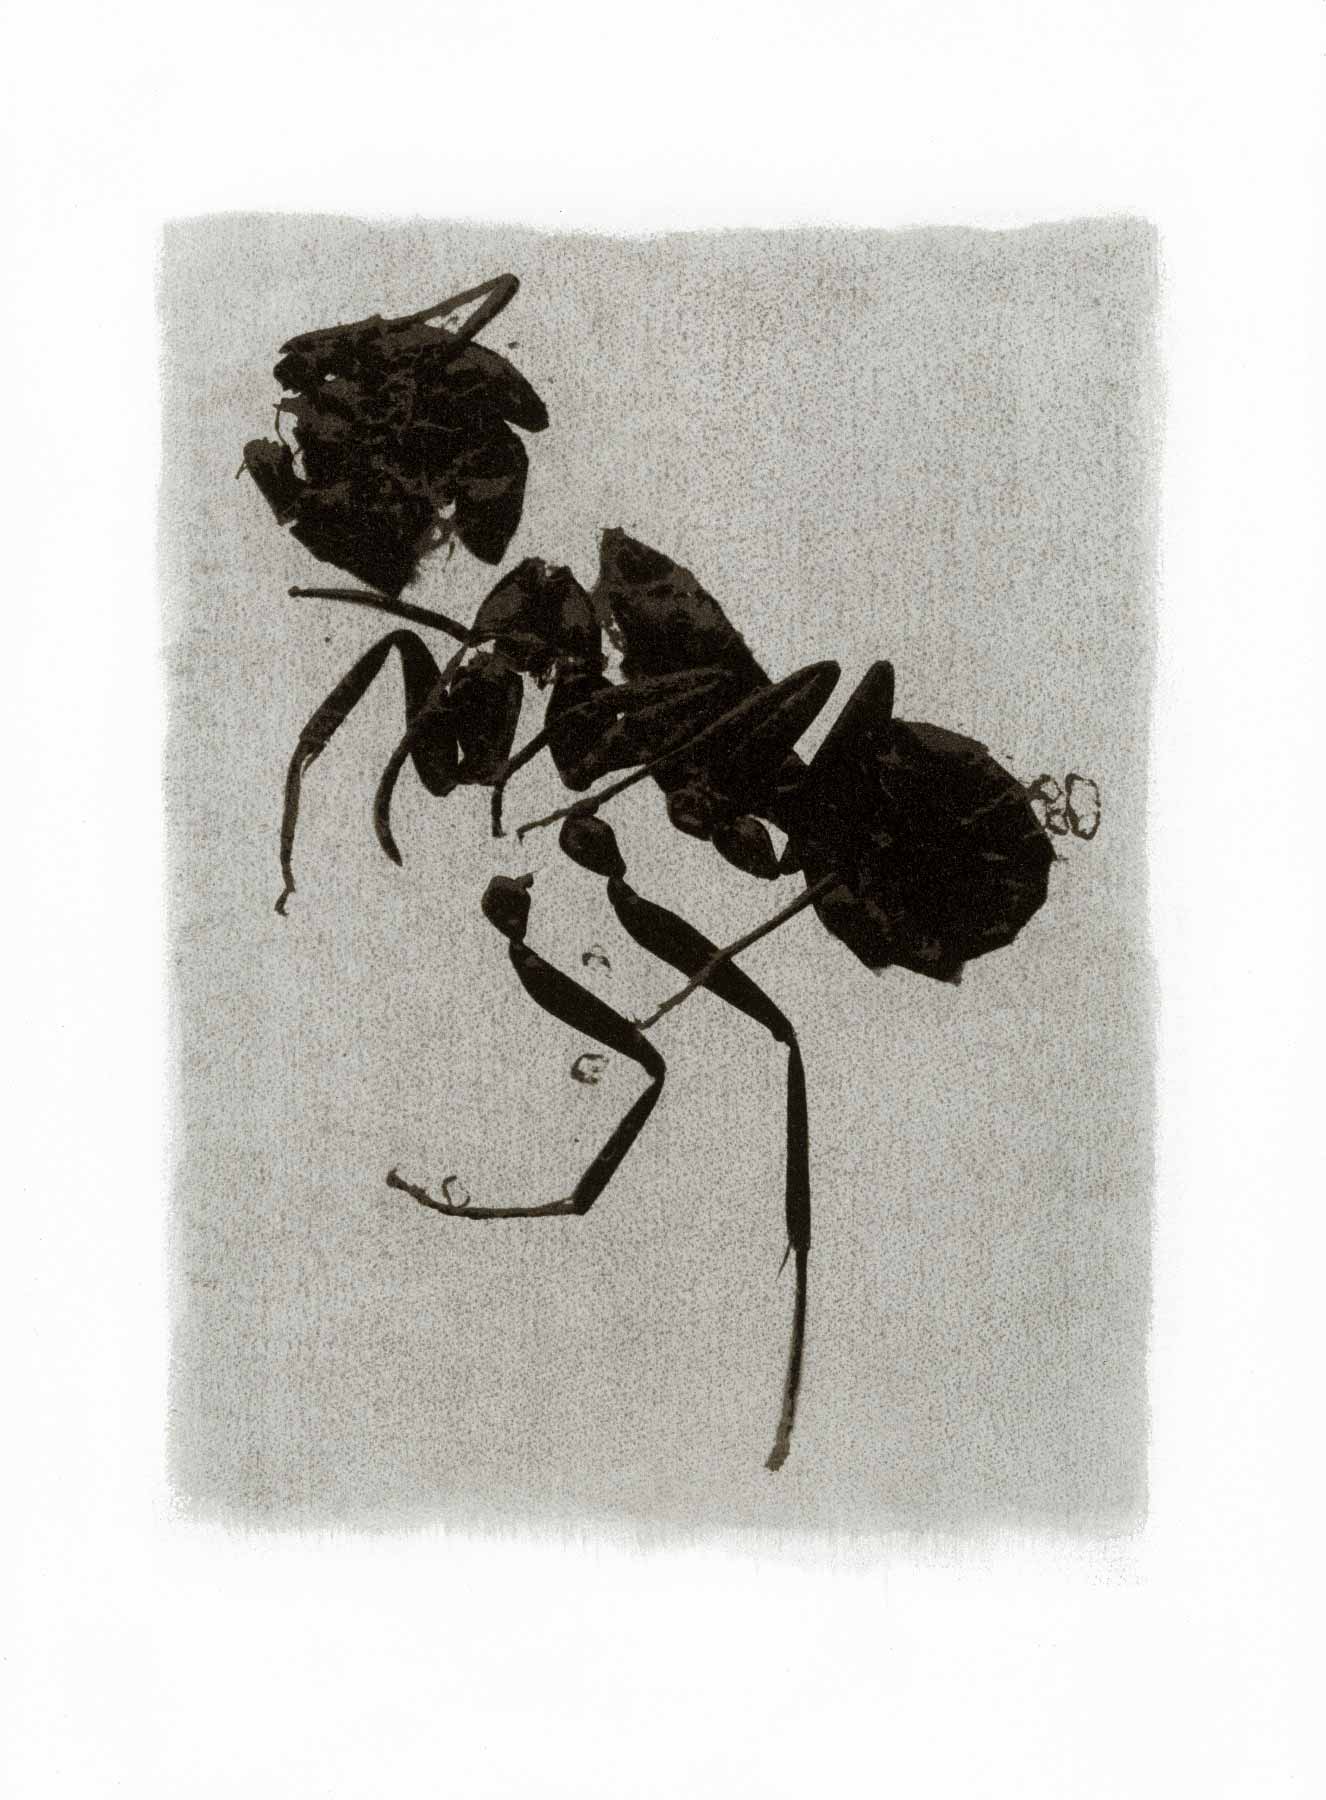 Gum bichromate insect - Ant 1994